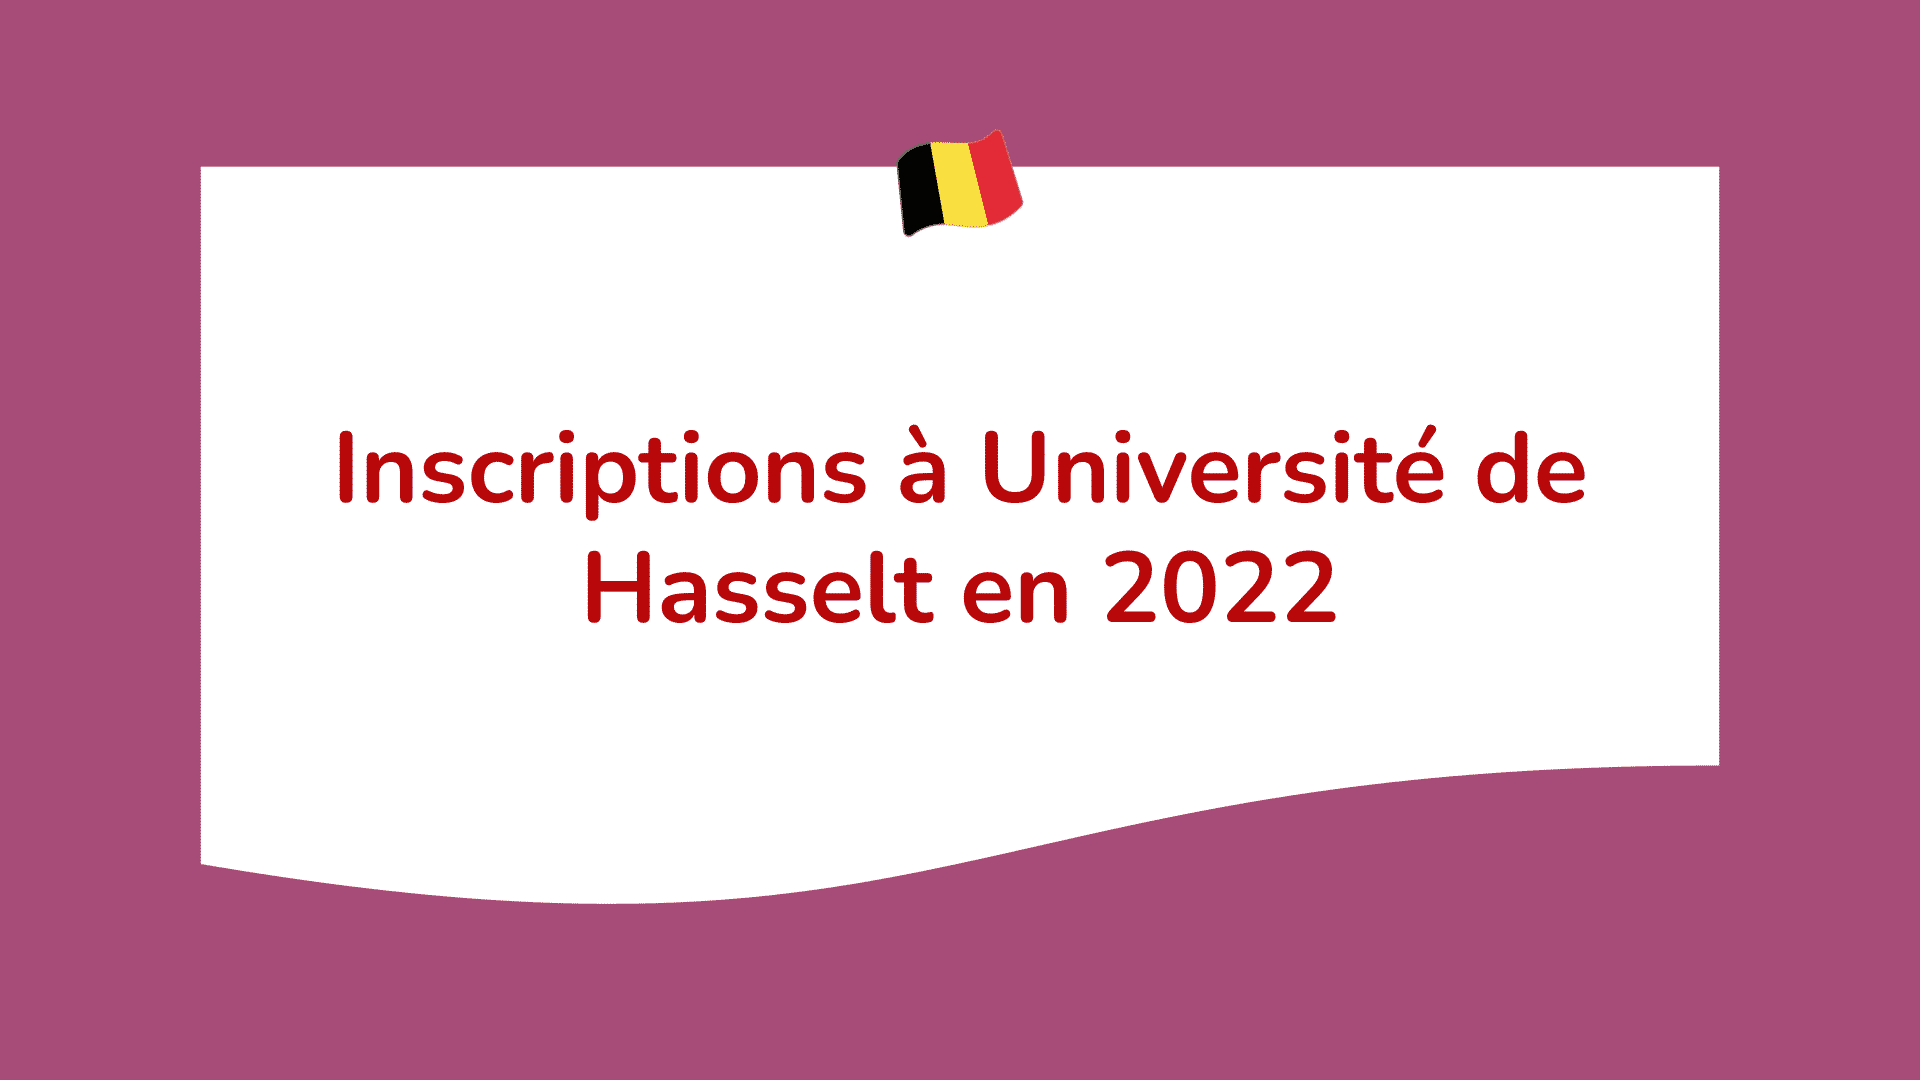 Université de Hasselt